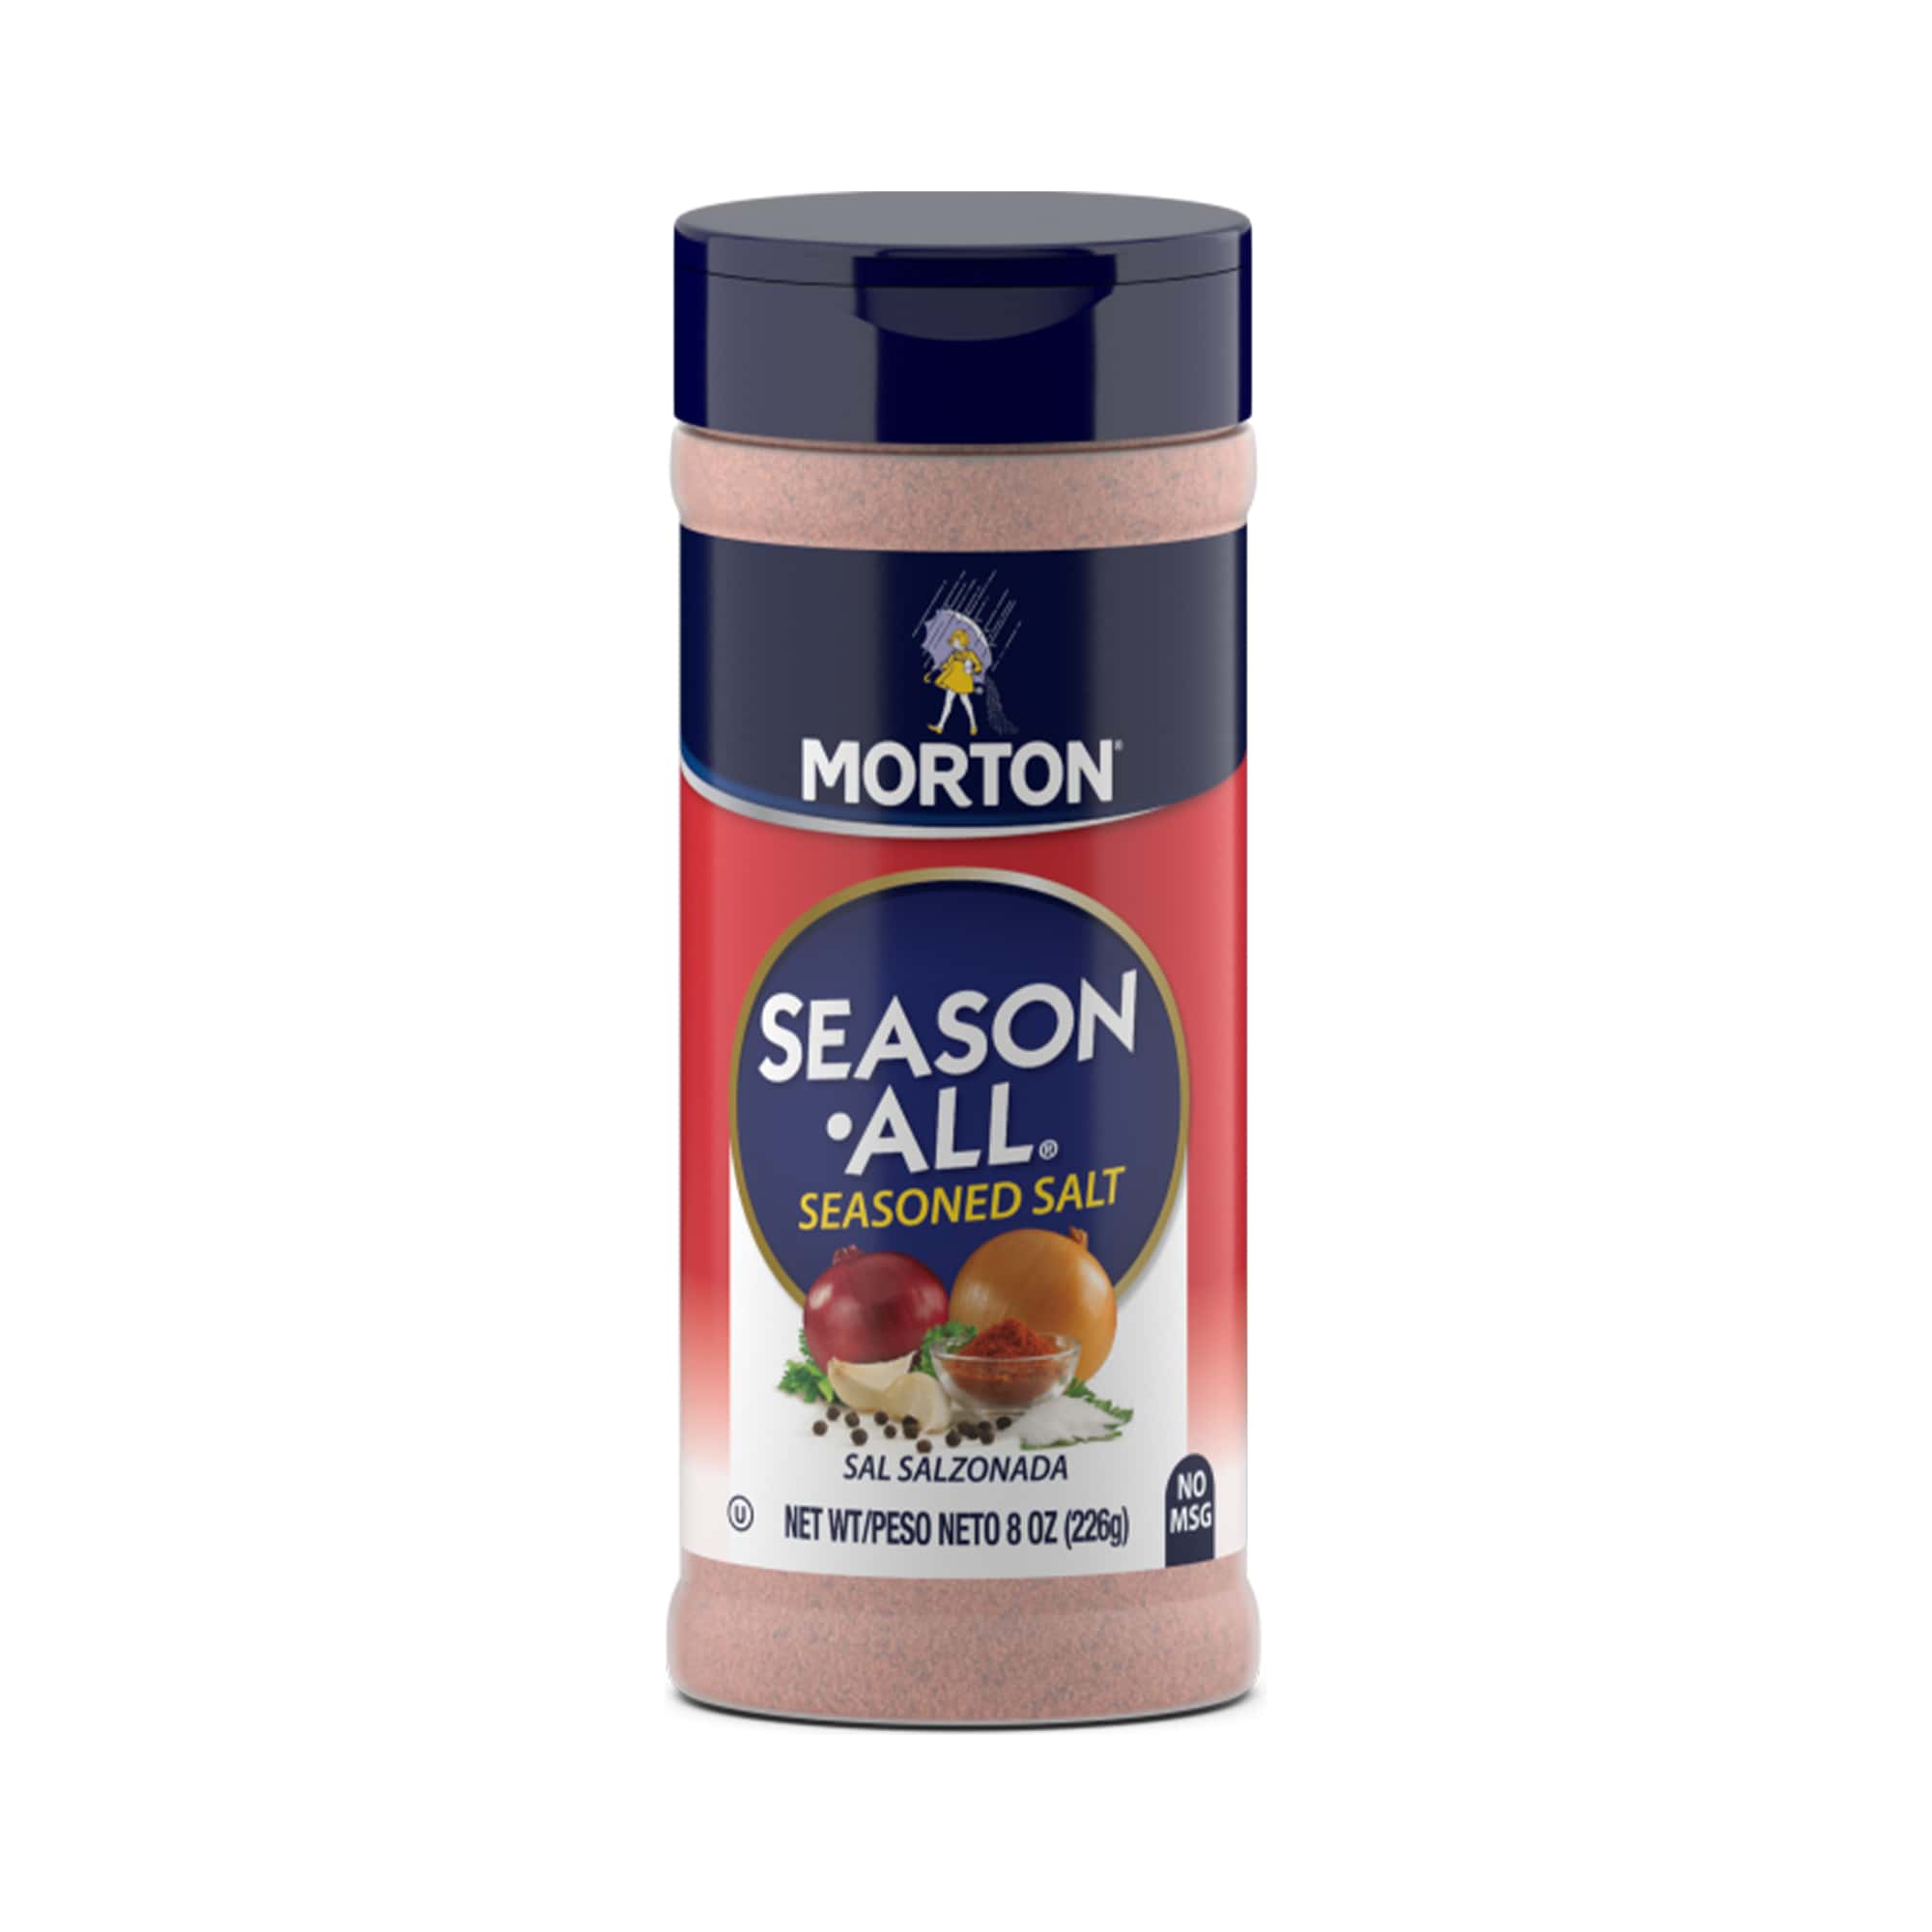 Morton Season All Seasoned Salt Original 226g